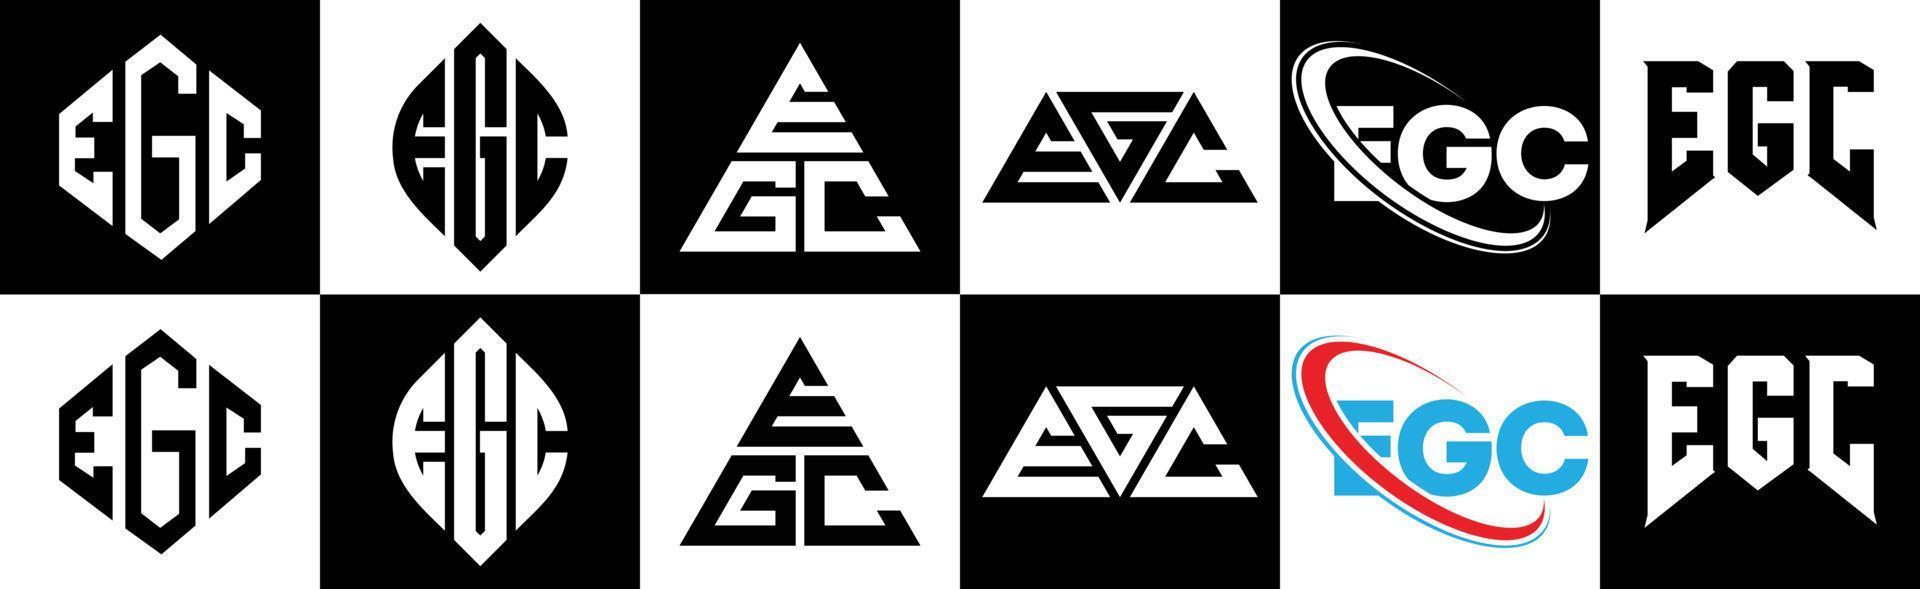 egc-Buchstaben-Logo-Design in sechs Stilen. zB Polygon, Kreis, Dreieck, Sechseck, flacher und einfacher Stil mit schwarz-weißem Buchstabenlogo in einer Zeichenfläche. zB minimalistisches und klassisches Logo vektor